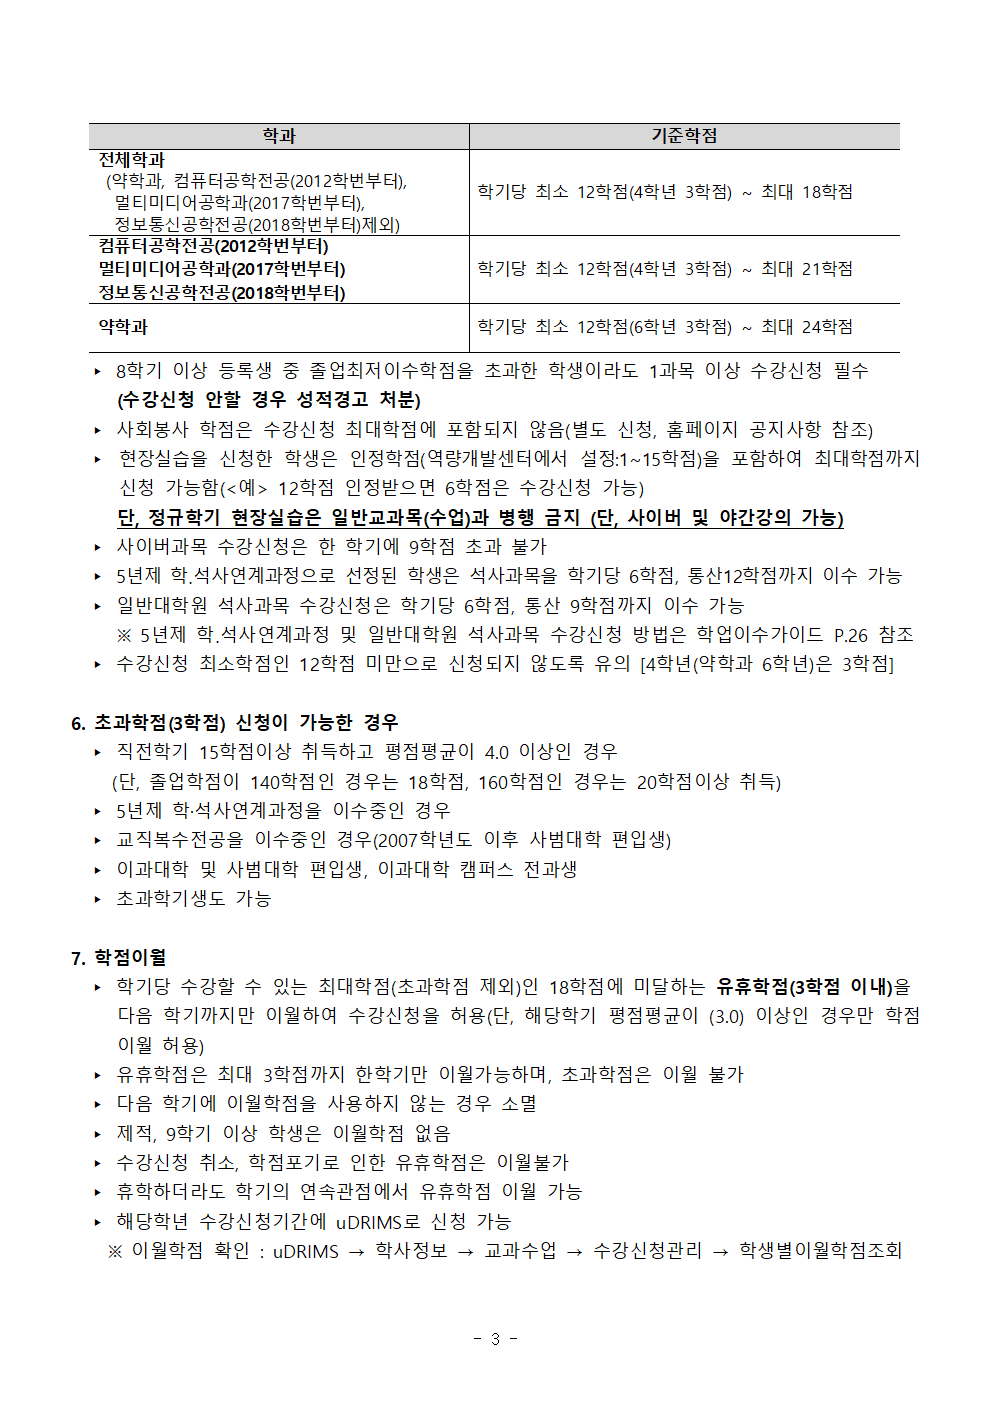 2020-1학기 학부 수강신청 안내문003.png